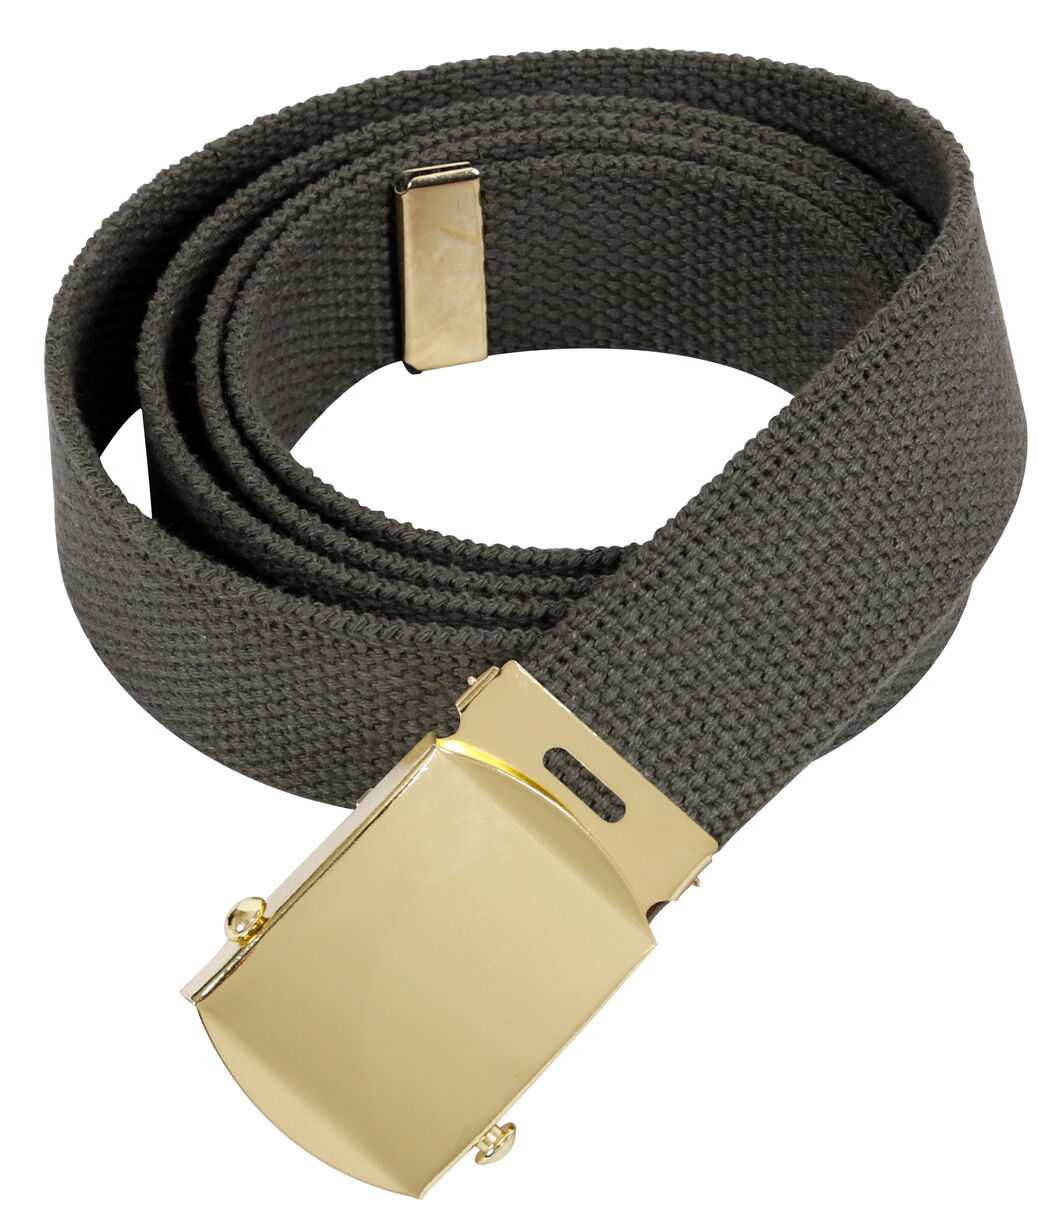 Rothco Military Web Belts Uniform Pants Belt